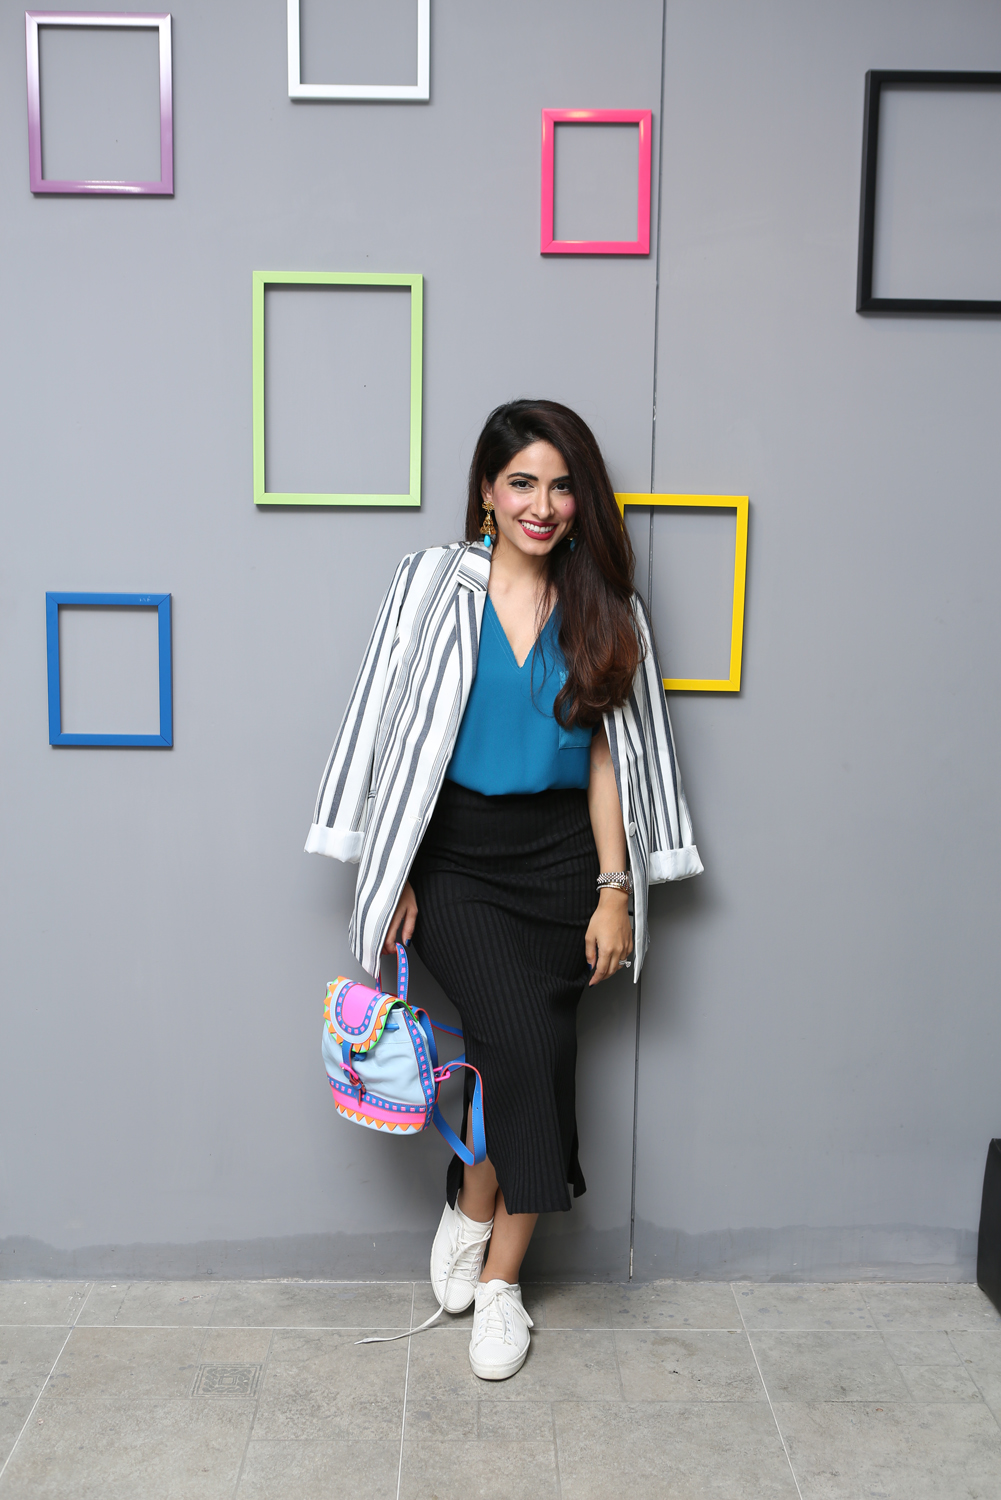 Beauty With Brains: Hot Pakistani Designers Sania Ali & Alyzeh Rahim Shirazi From â€œThe Exhibitâ€ Concept Store In Lahore